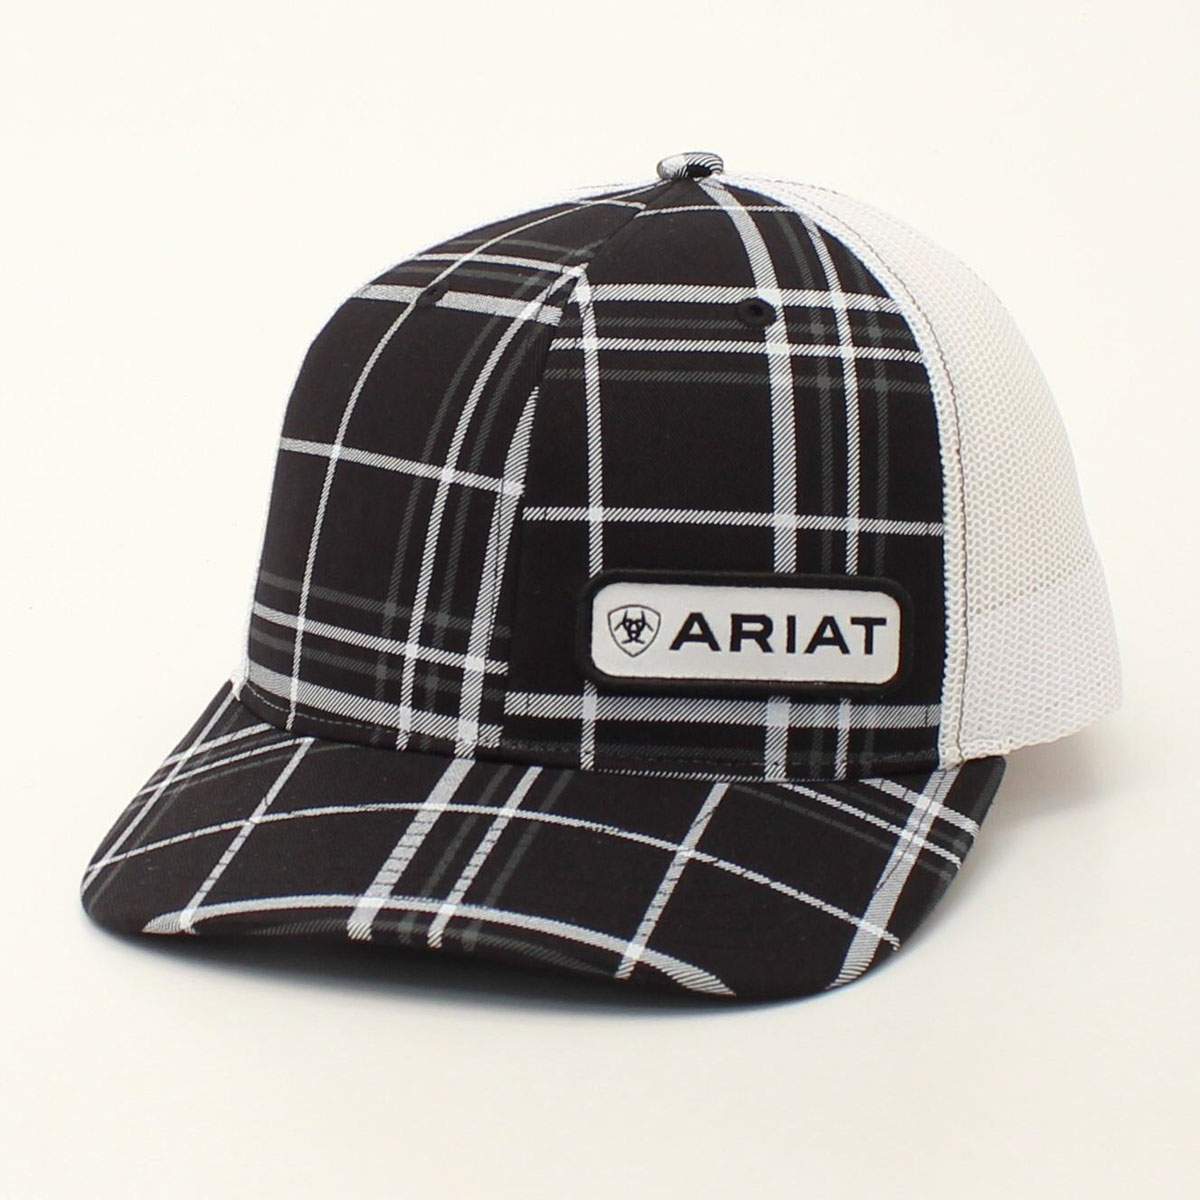 Ariat Men's 112 Snapback Cap - Black & White Plaid